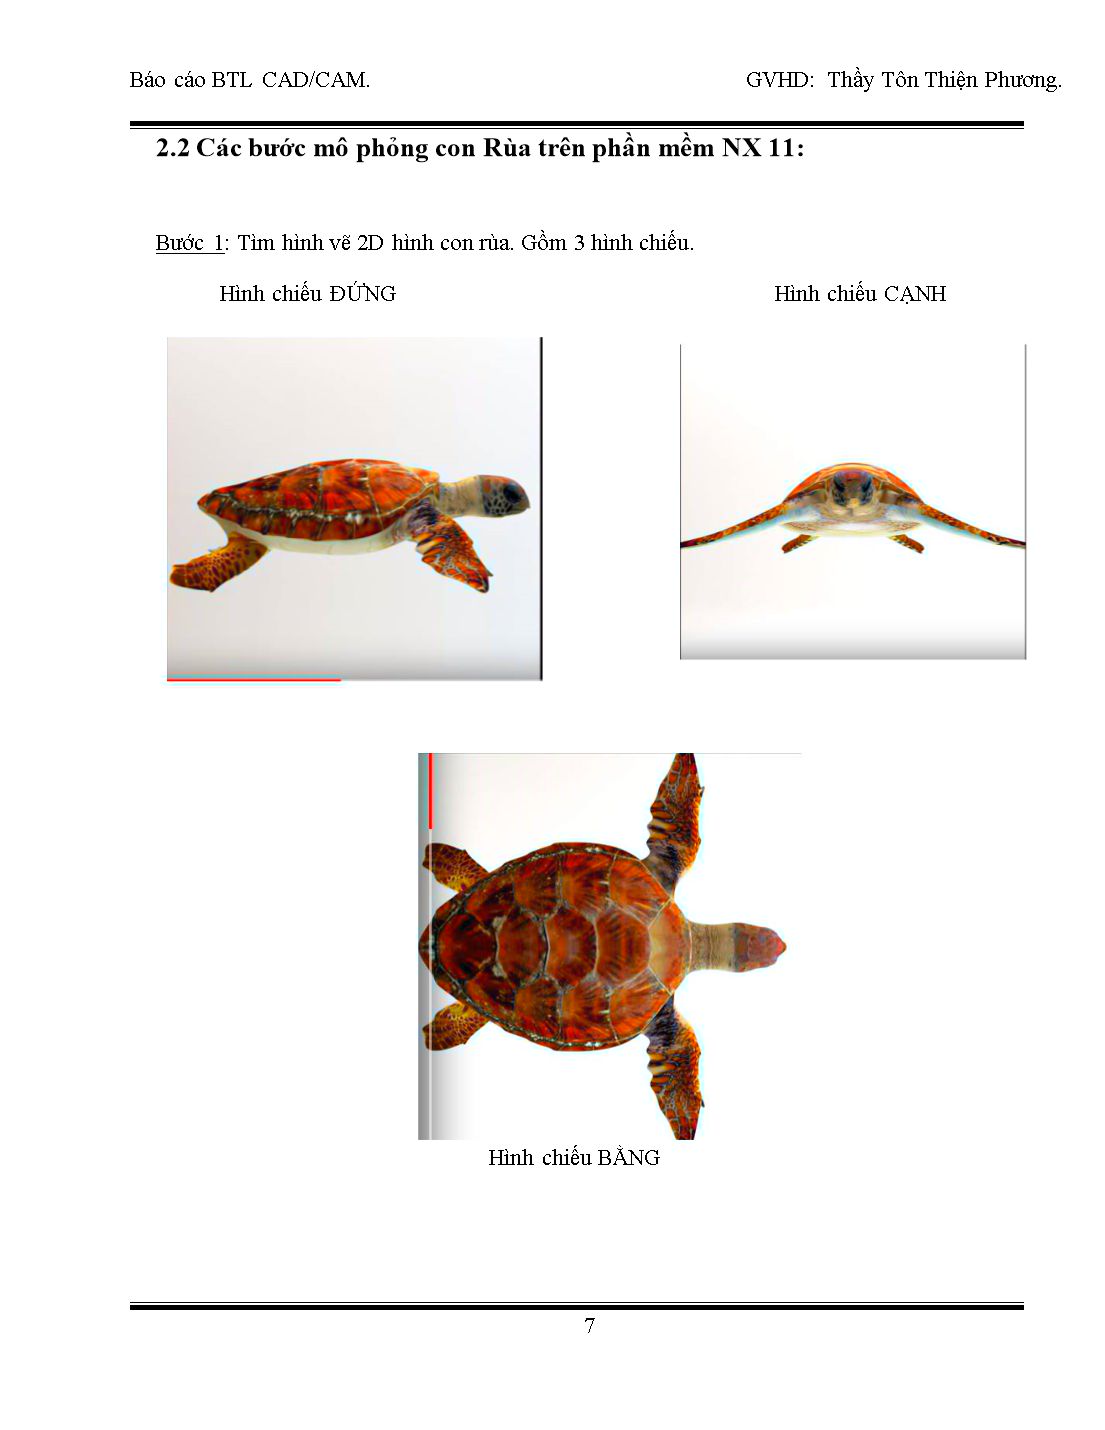 Báo cáo bài tập lớn CAD/CAM - Đề bài: Gia công Con Rùa 3D trên NX 11 trang 7